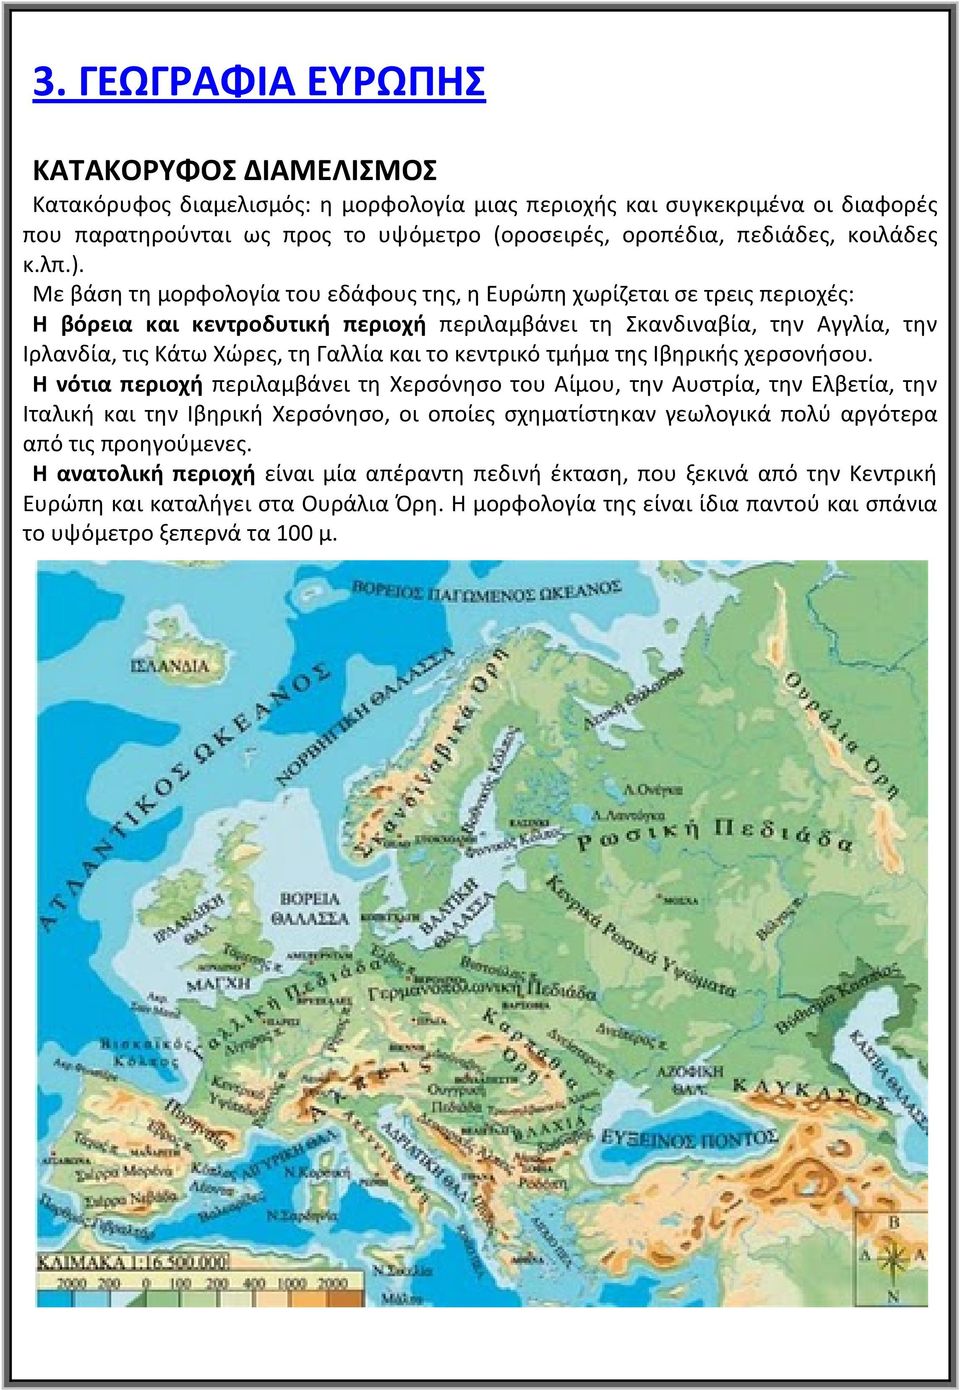 Με βάση τη μορφολογία του εδάφους της, η Ευρώπη χωρίζεται σε τρεις περιοχές: Η βόρεια και κεντροδυτική περιοχή περιλαμβάνει τη Σκανδιναβία, την Αγγλία, την Ιρλανδία, τις Κάτω Χώρες, τη Γαλλία και το